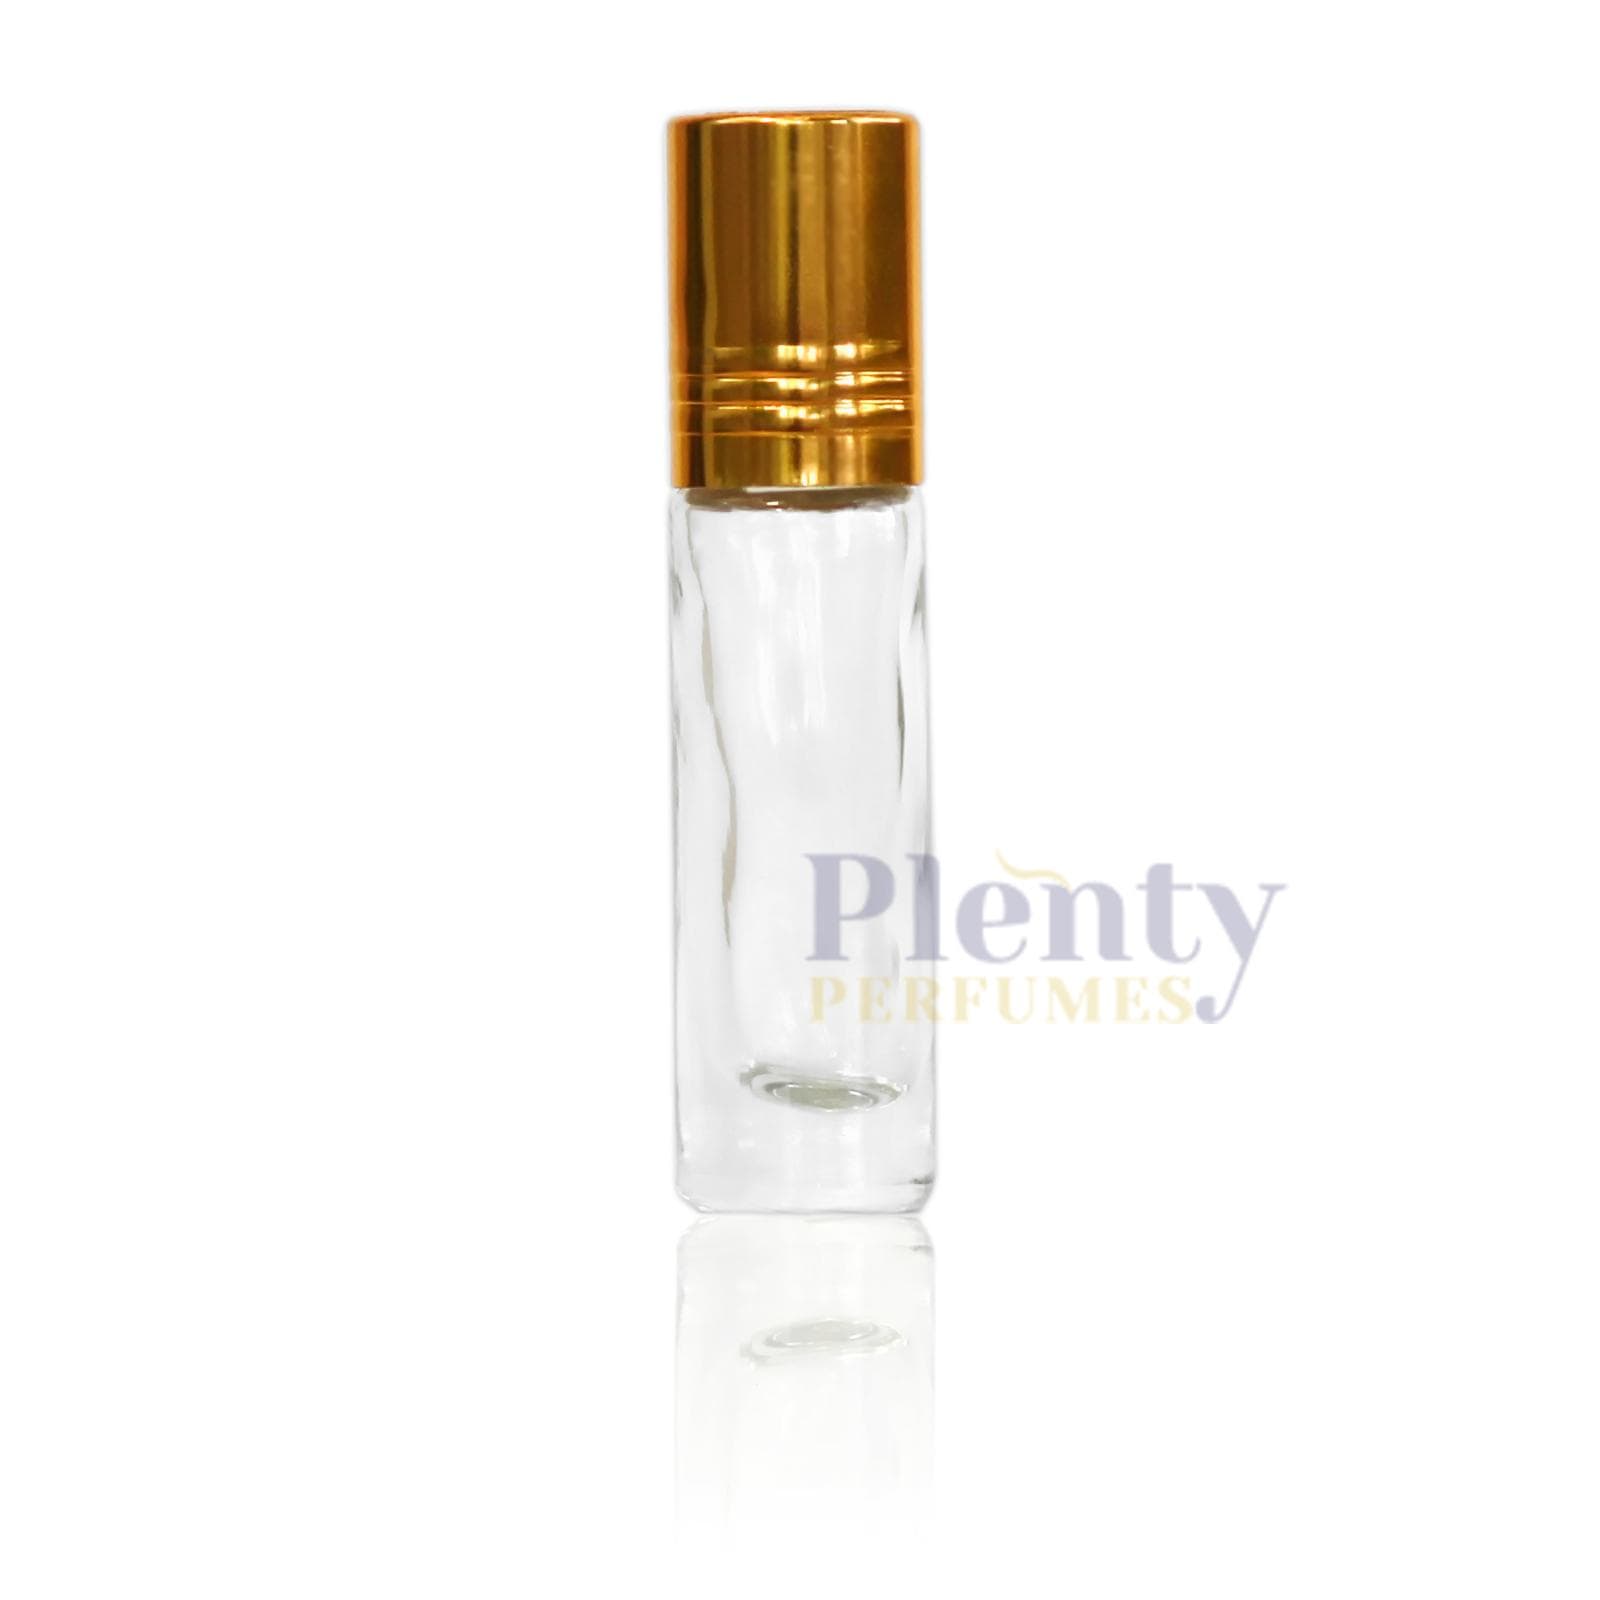 Tasawar By Swiss Arabian Perfume Oil Women - Plenty Perfumes